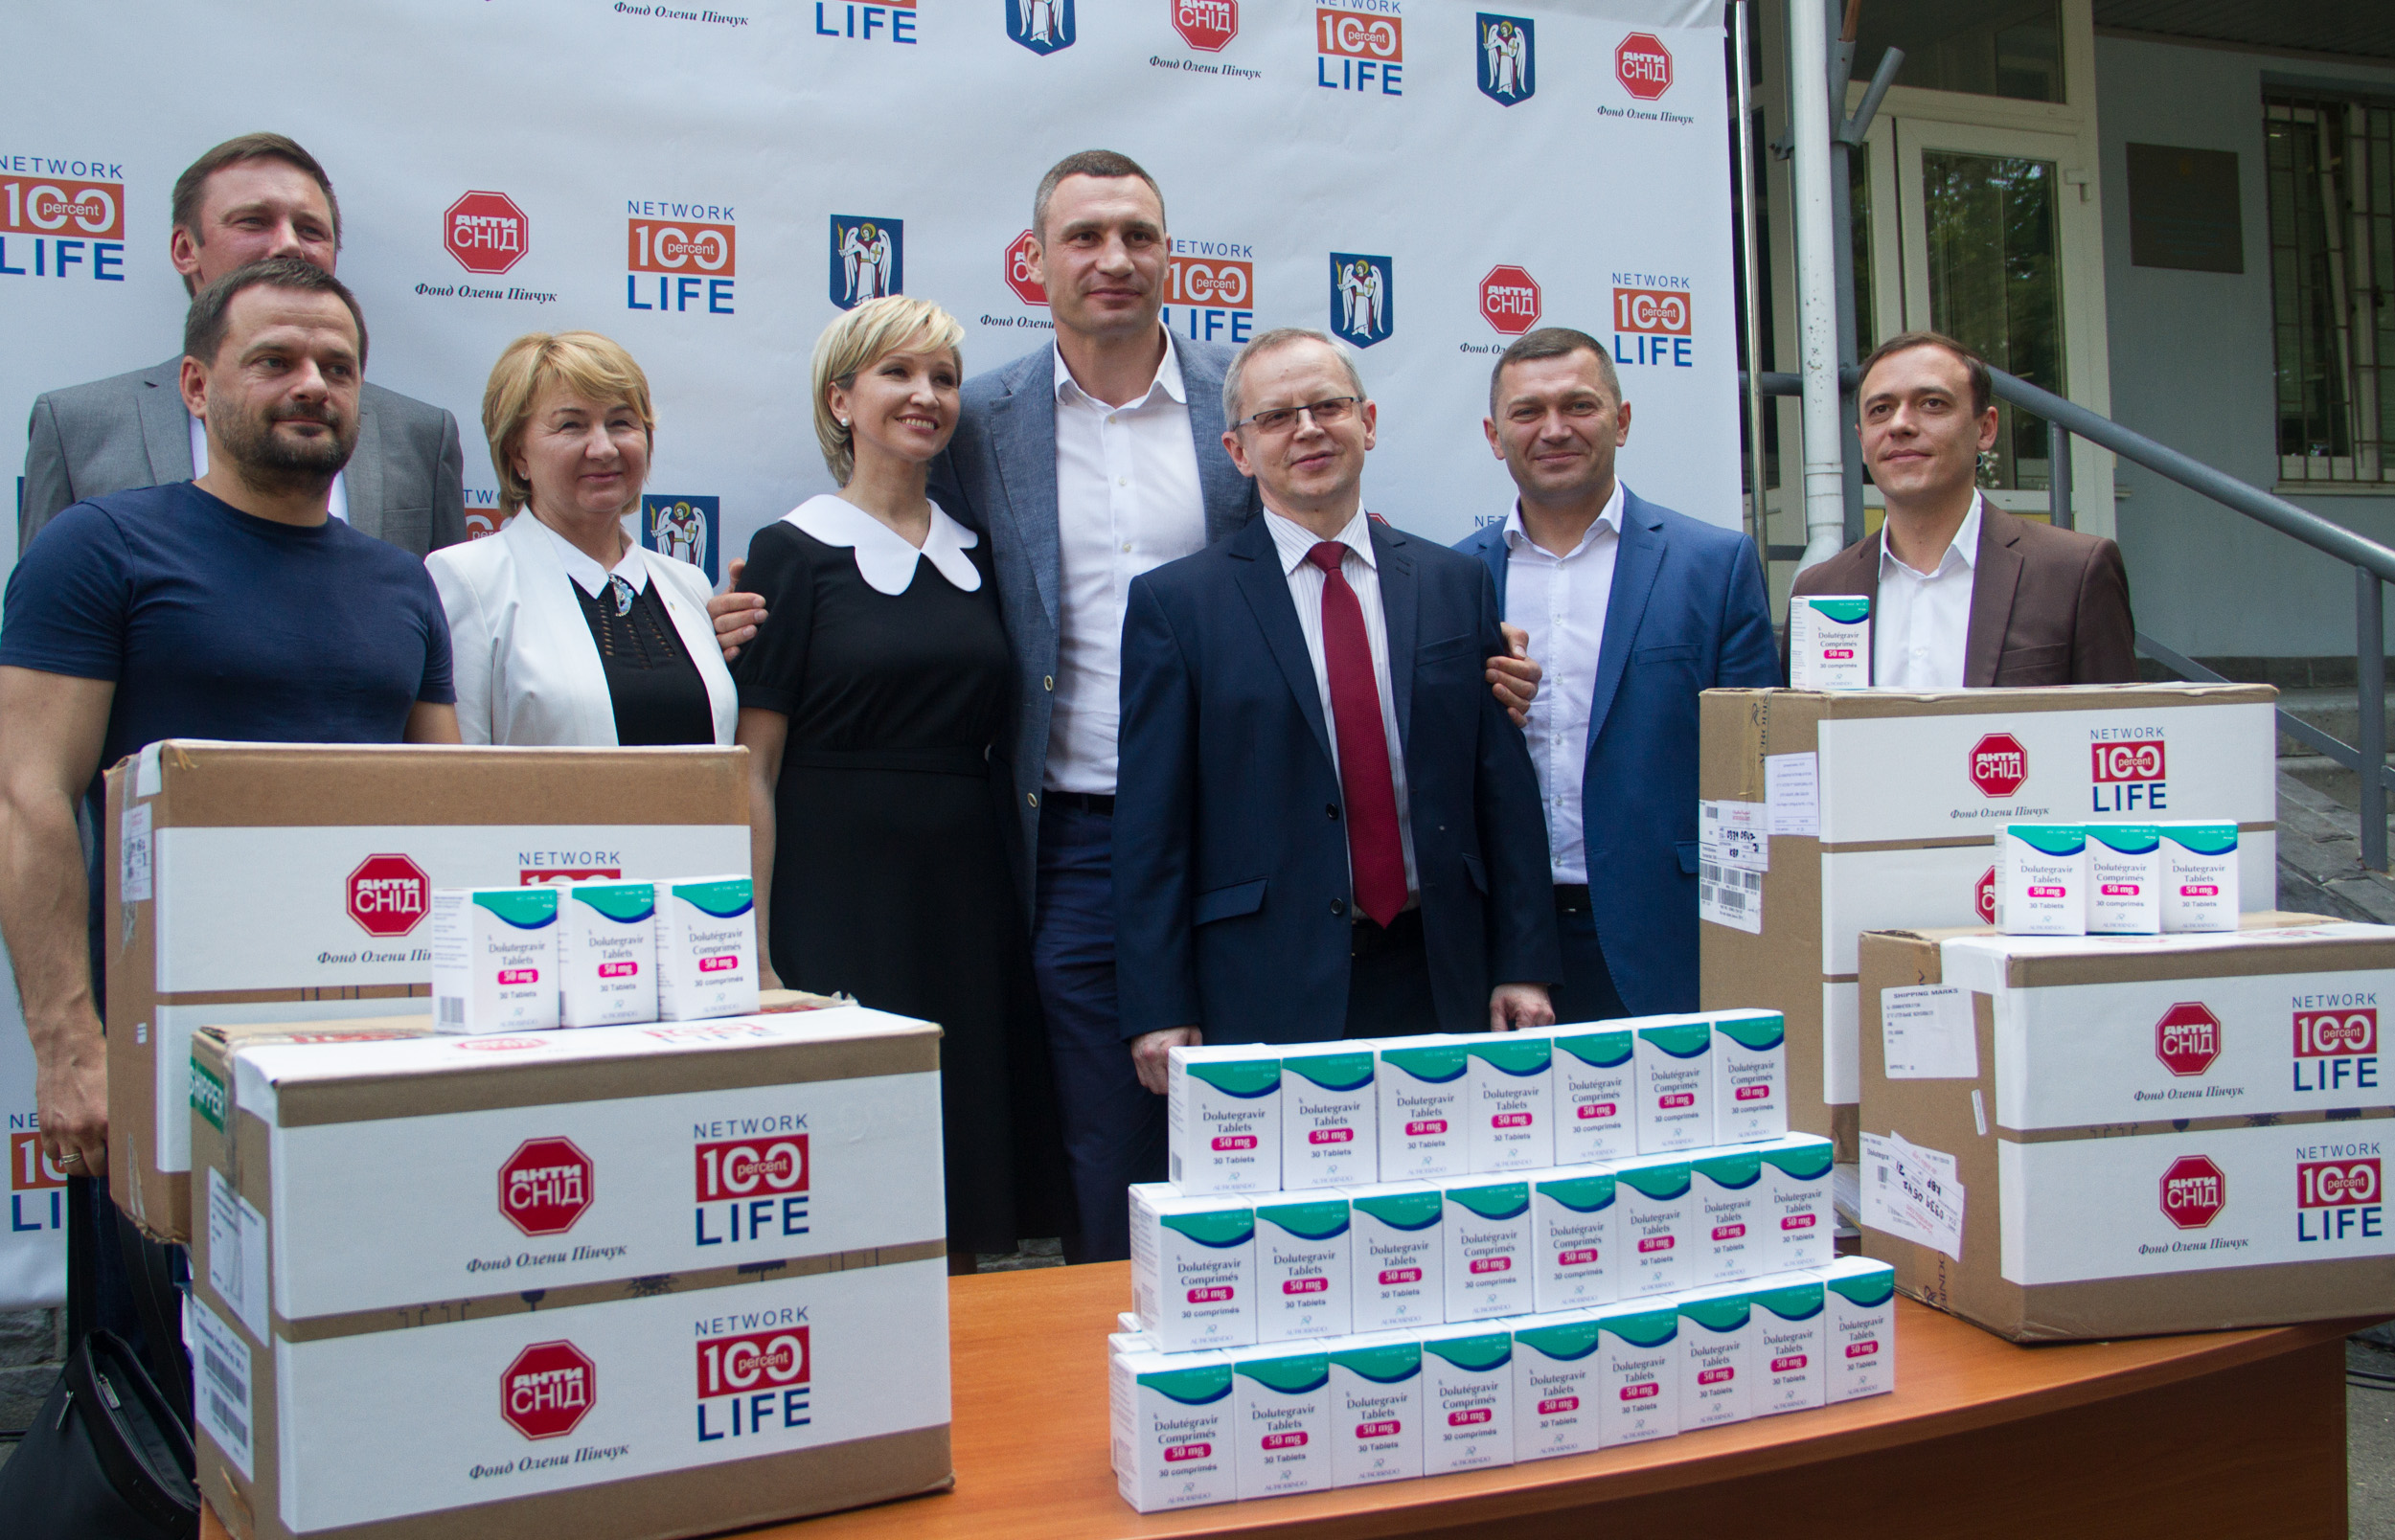 Віталій Кличко: «Новітній препарат антиретровірусної терапії, який отримав Київ, – це ще один крок до зупинення епідемії ВІЛ/СНІДУ»